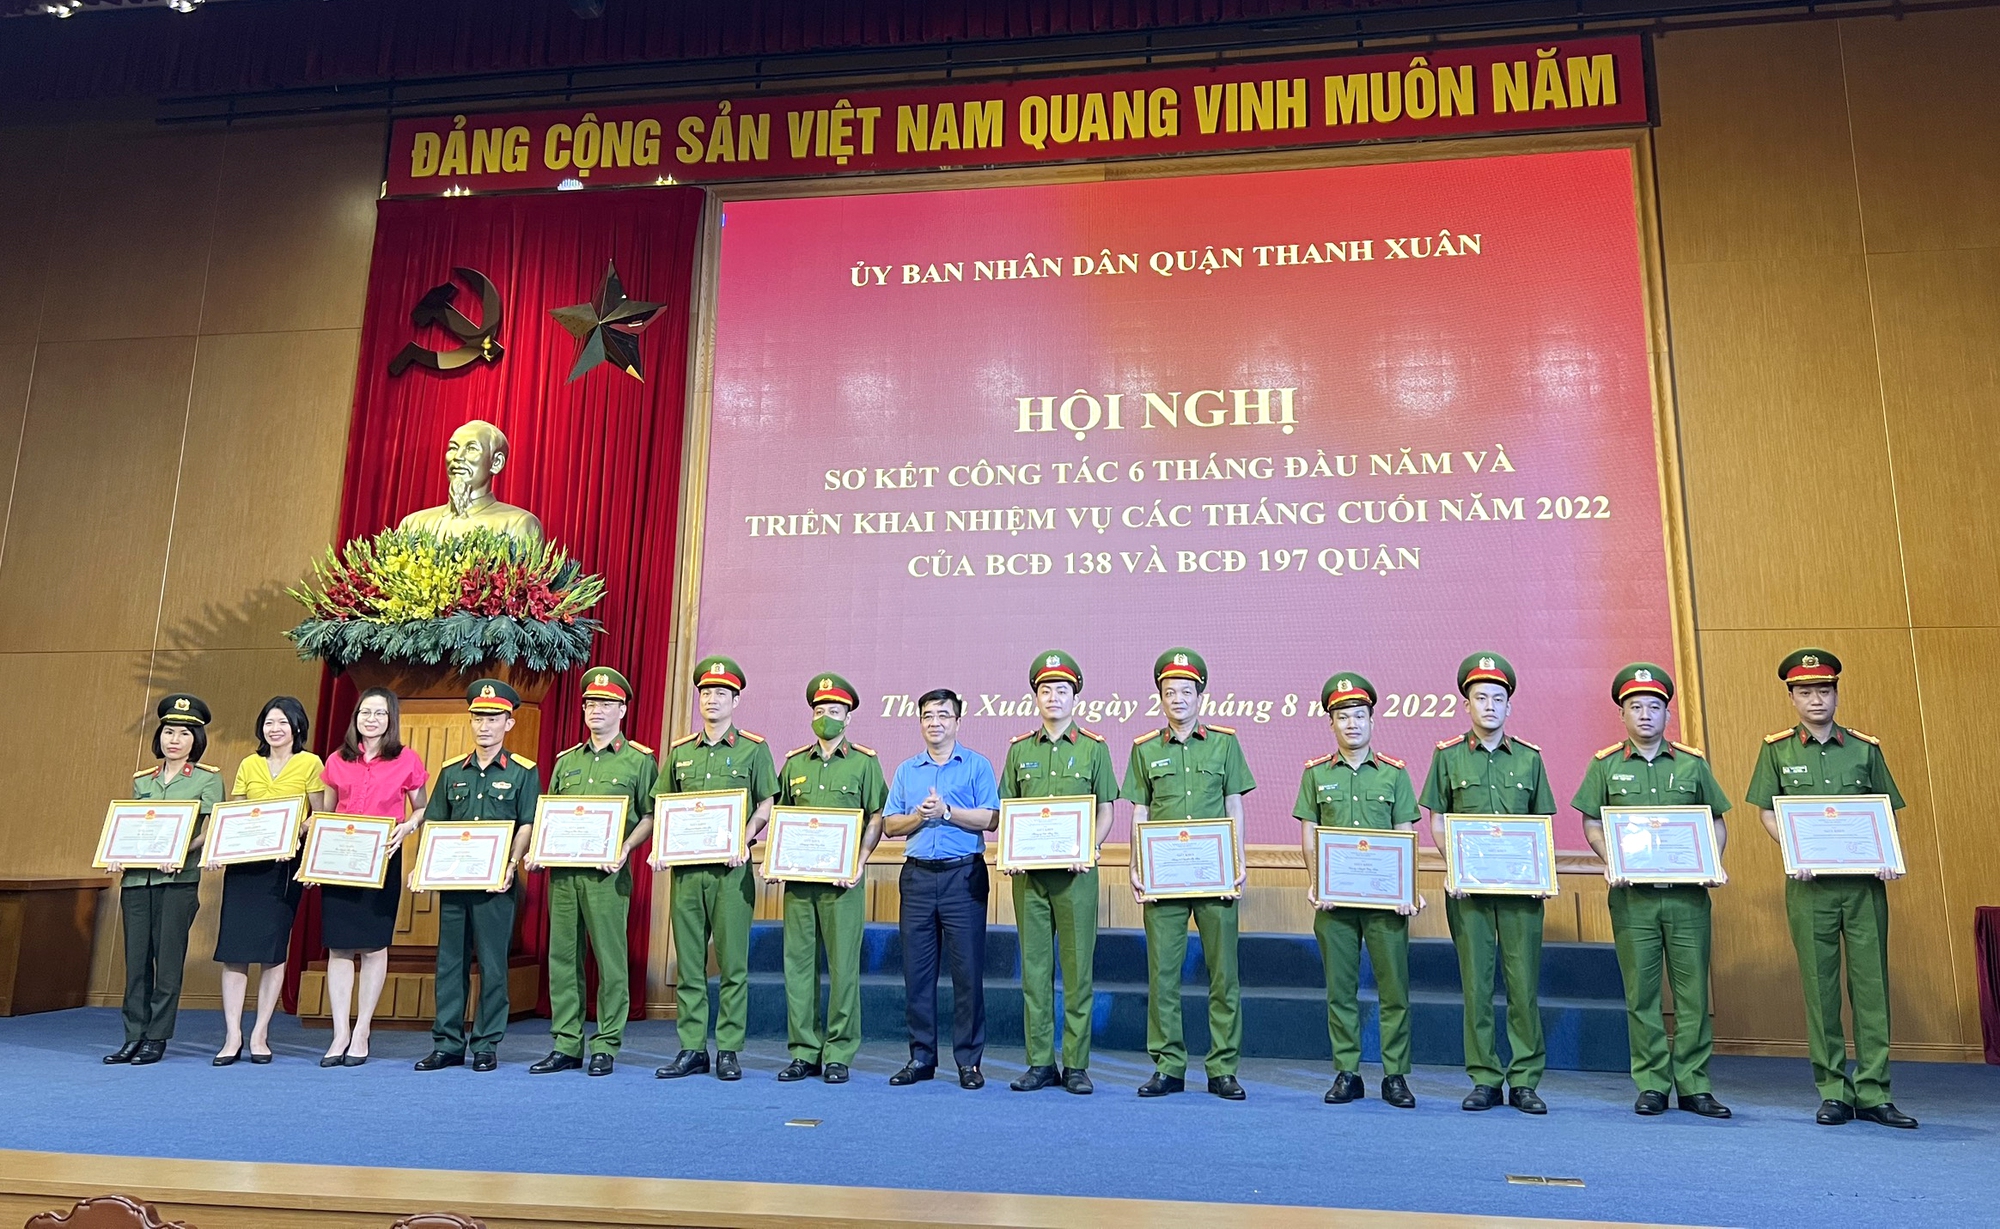  quận Thanh Xuân tổ chức hội nghị sơ kết công tác 6 tháng đầu năm Ban chỉ đạo 139 và 197 - Ảnh 2.